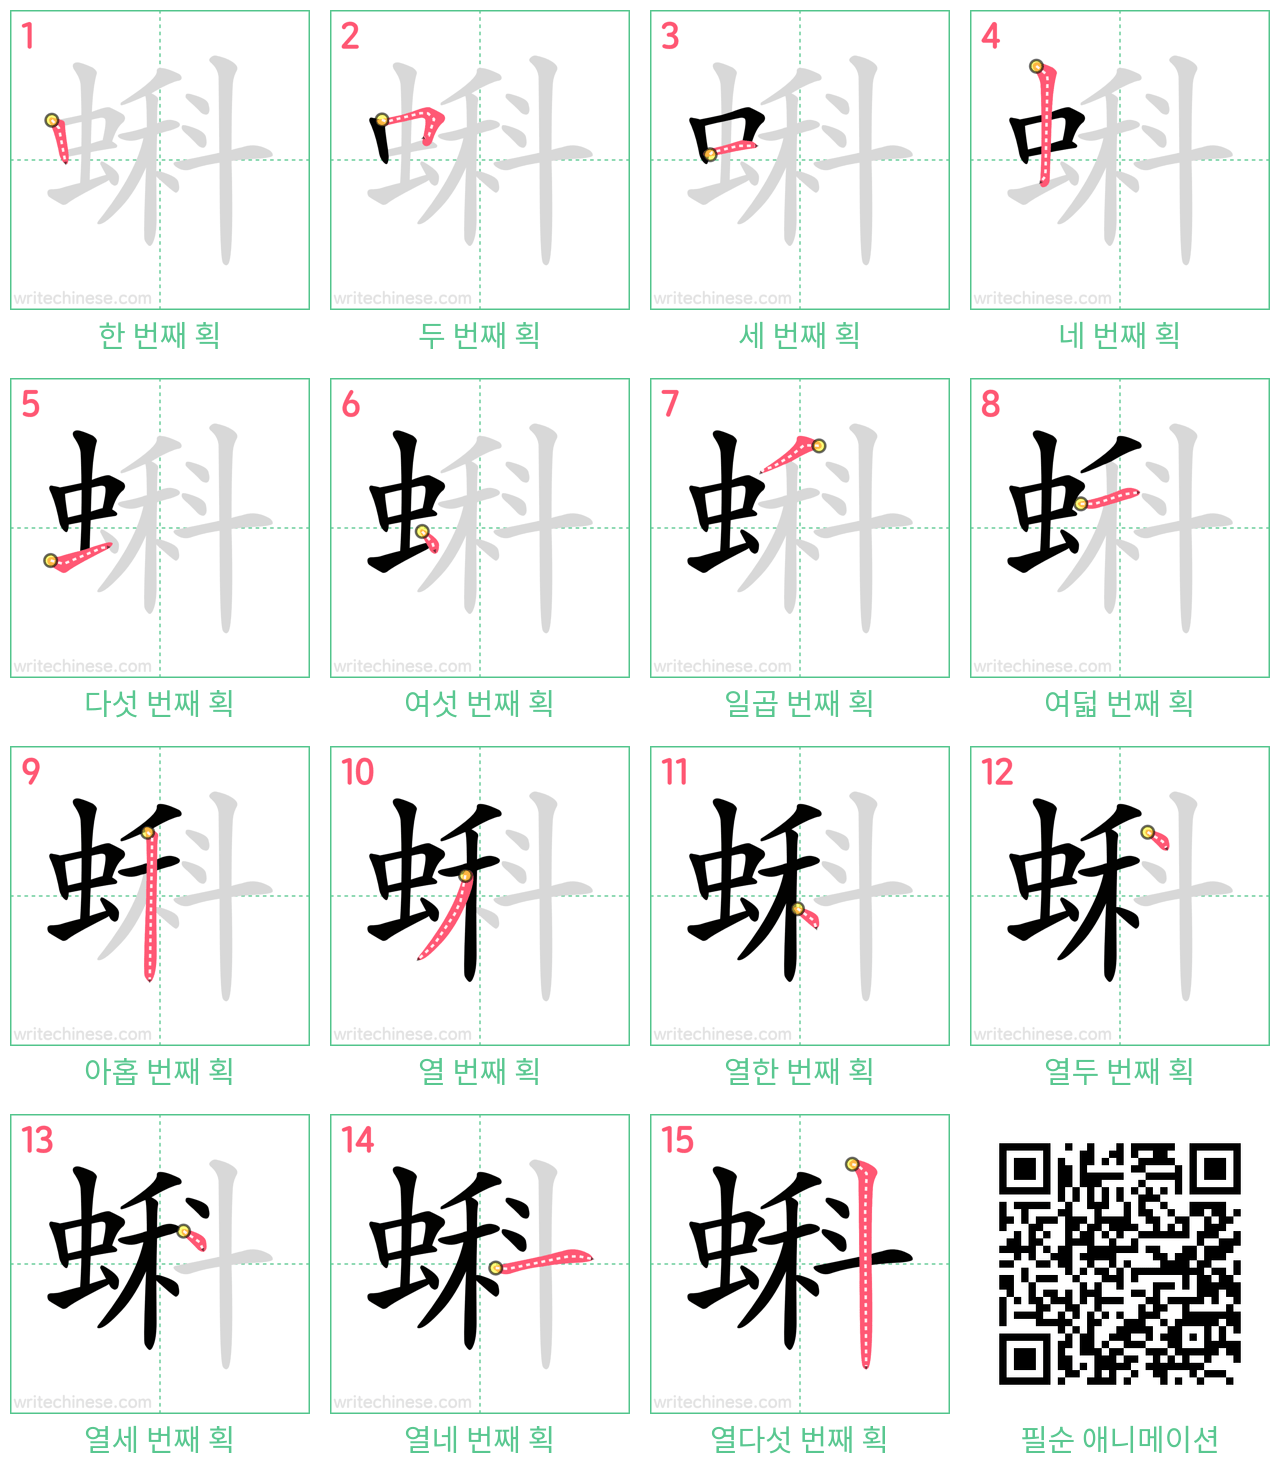 蝌 step-by-step stroke order diagrams